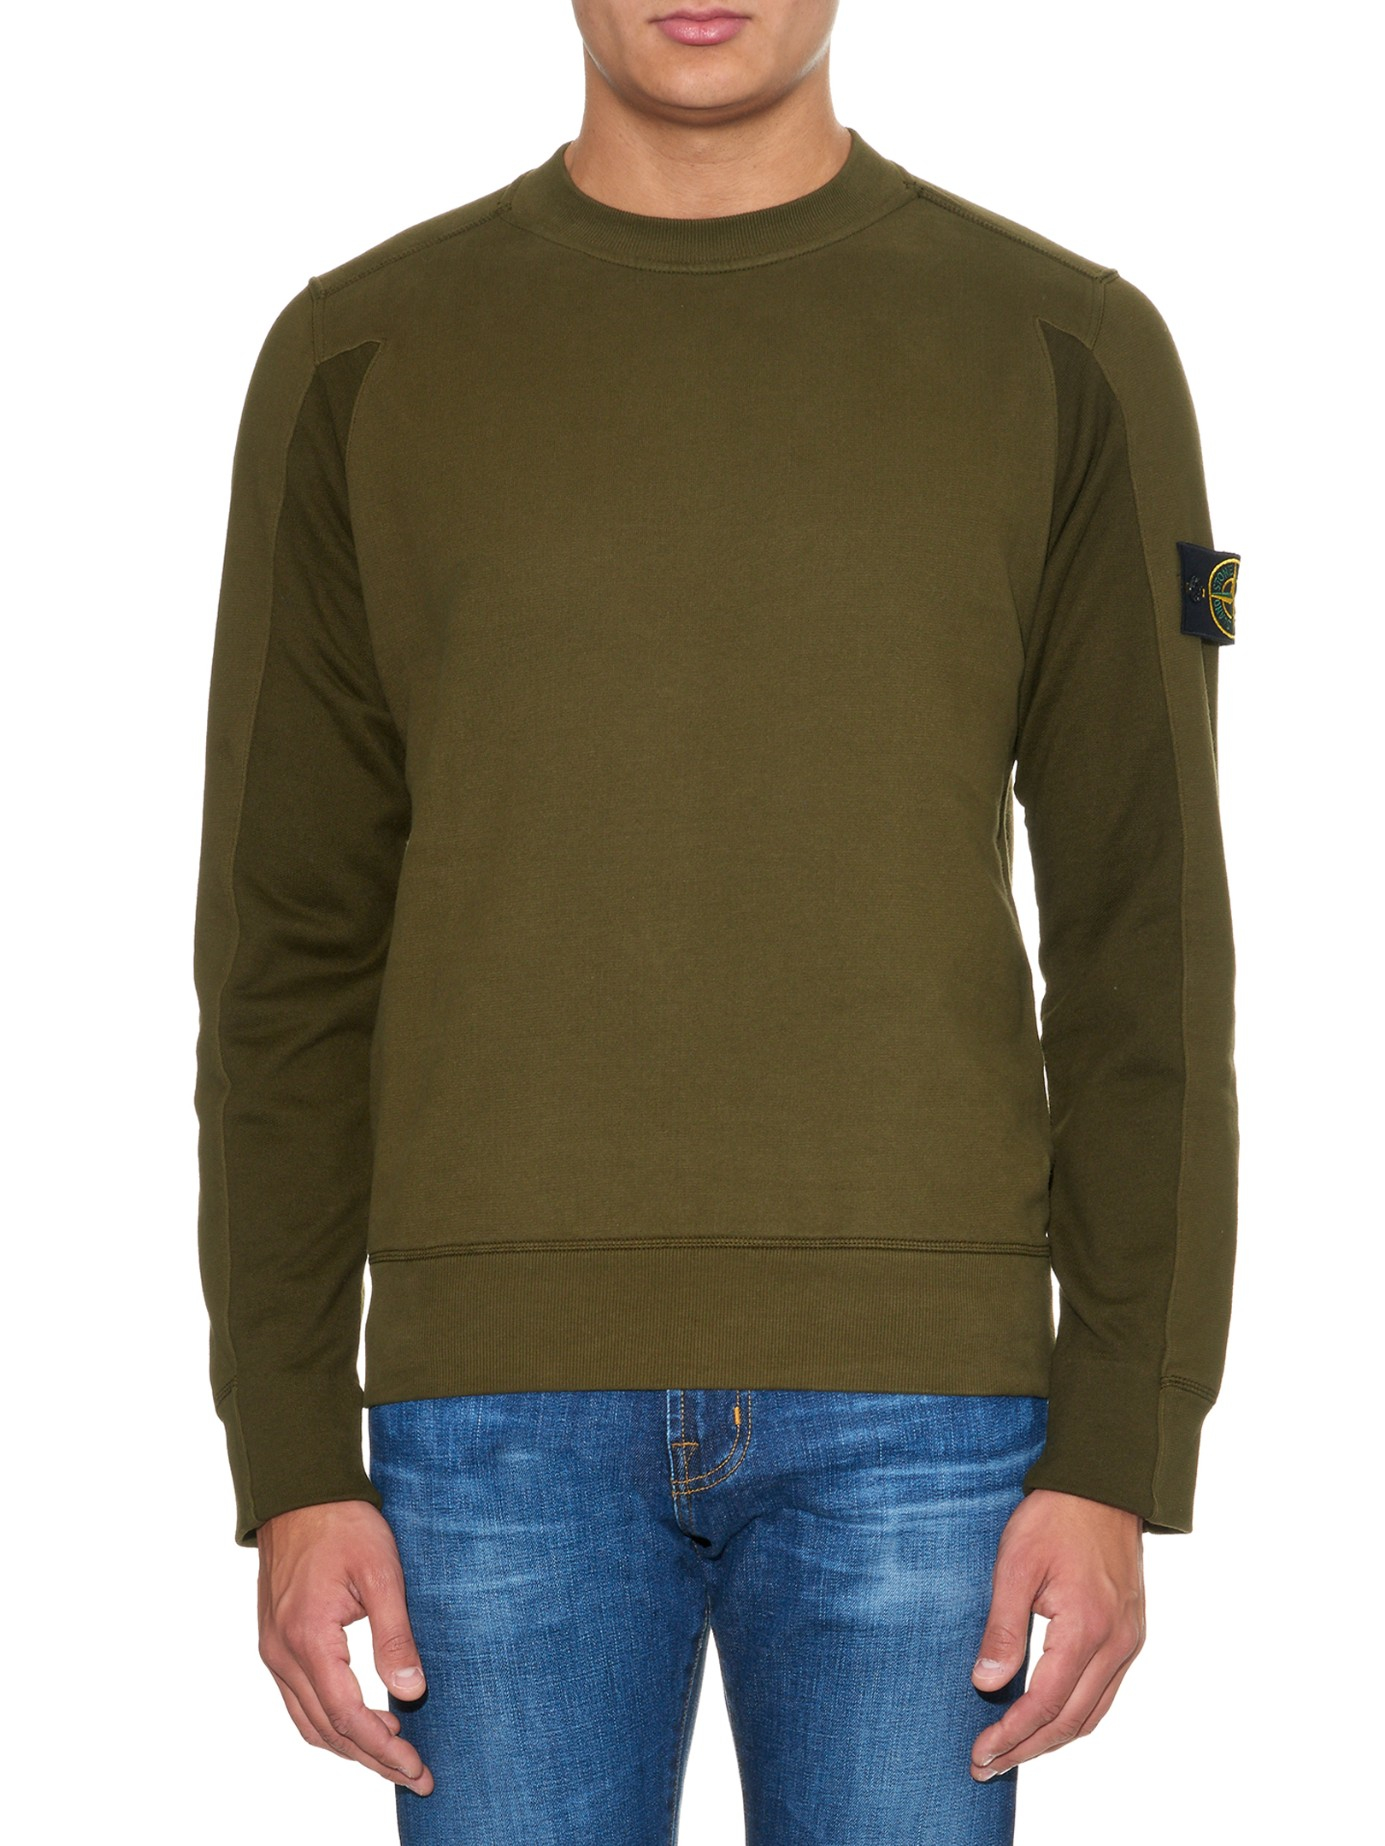 Lyst - Stone Island Crew Neck Cotton-fleece Sweatshirt in Brown for Men